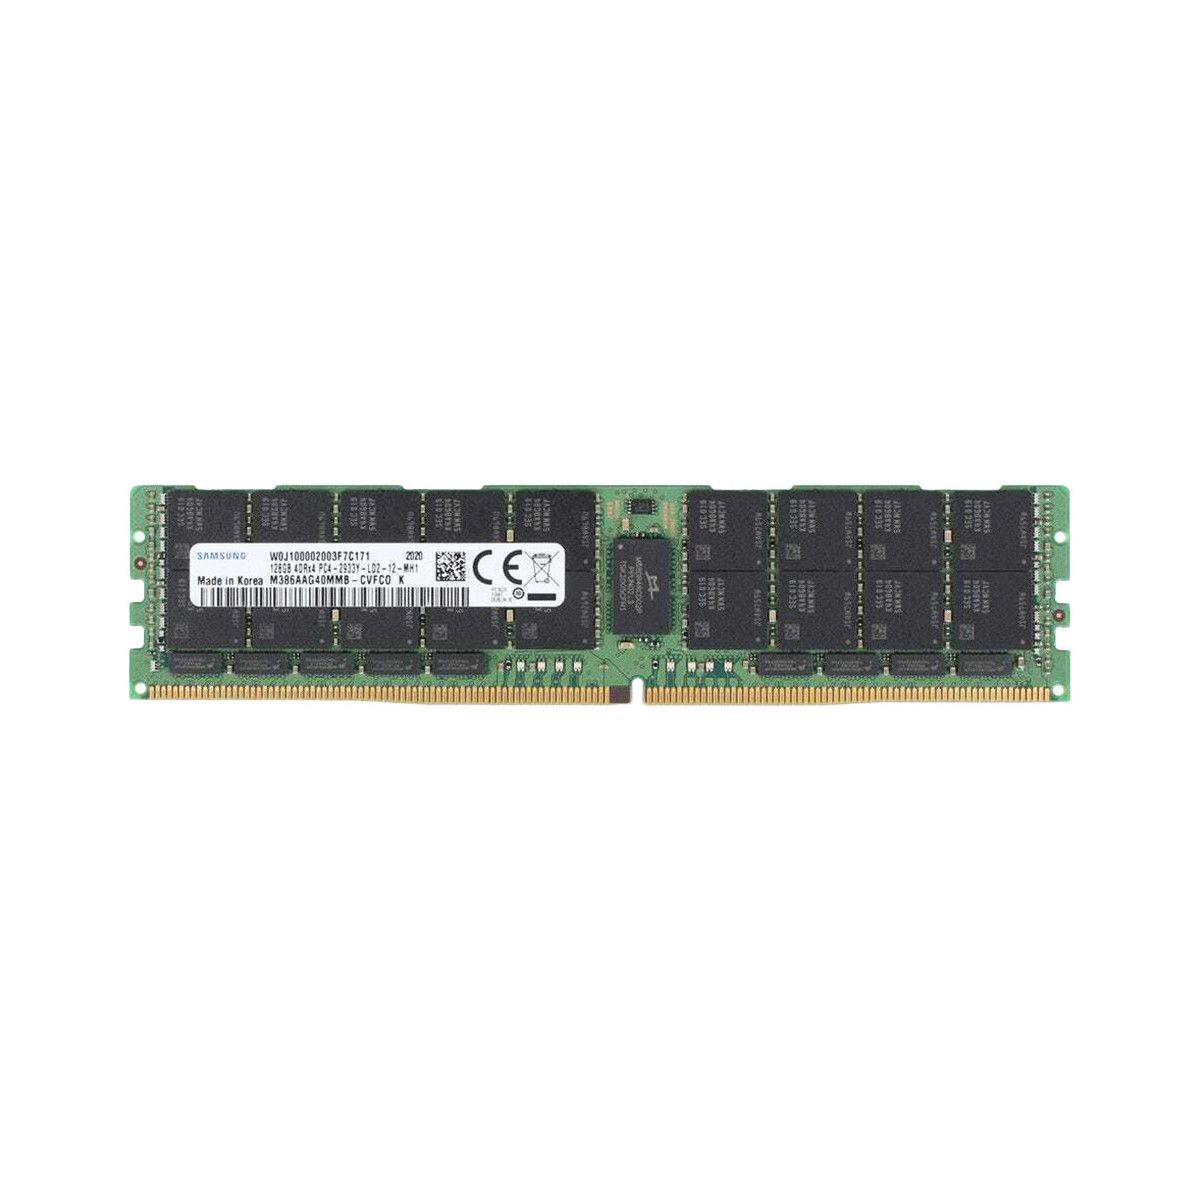 P00928-B21-MS - Memstar 1x 128GB DDR4-2933 LRDIMM PC4-23466U-L - Mem-star Kompatybilna pamięć OEM 1 - Memstar 